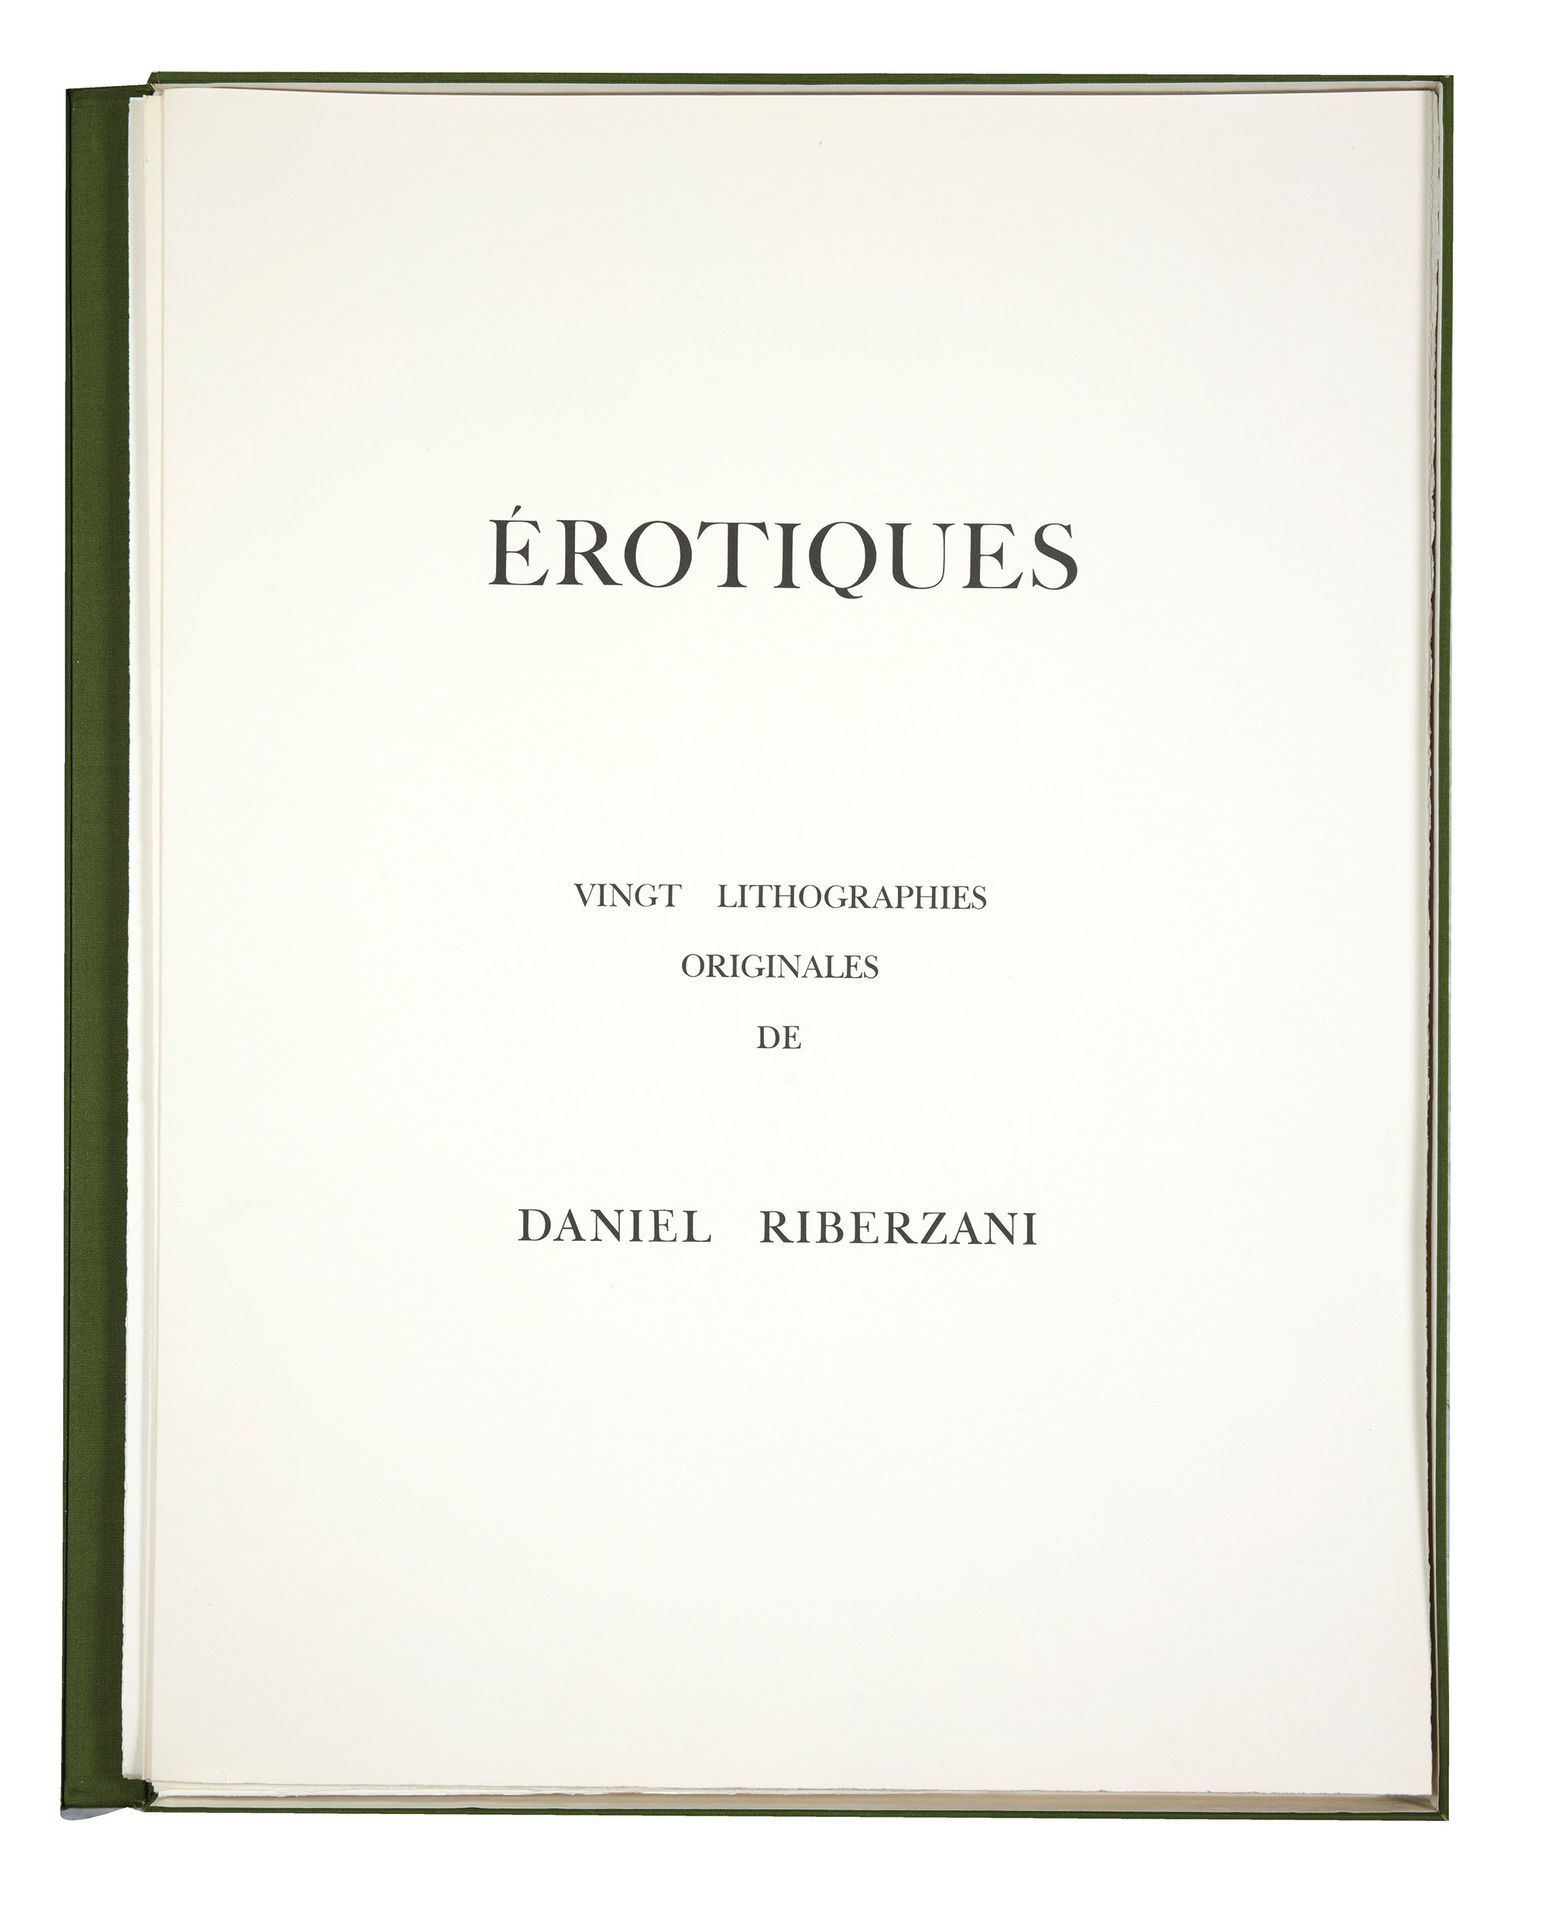 Daniel RIBERZANI Daniel RIBERZANI
Erotiques, vingt lithographies originales, 197&hellip;